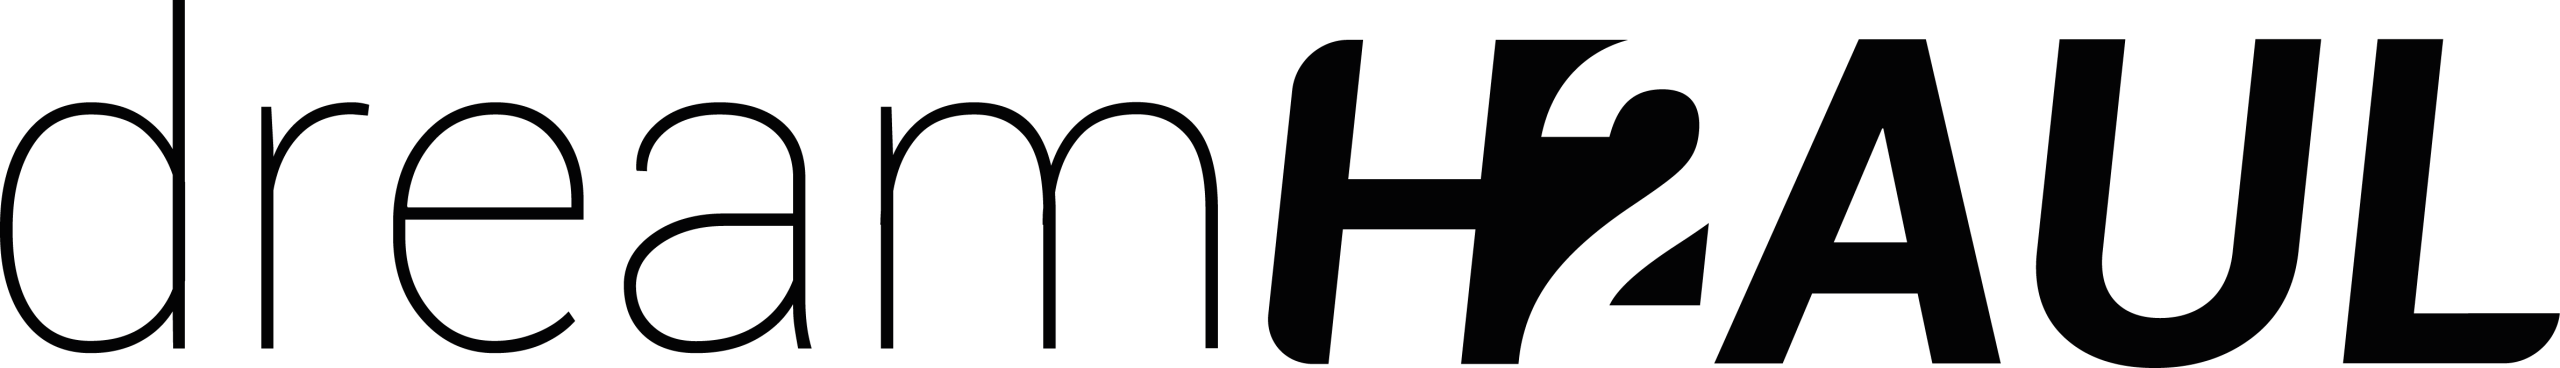 dreamh2aul logo